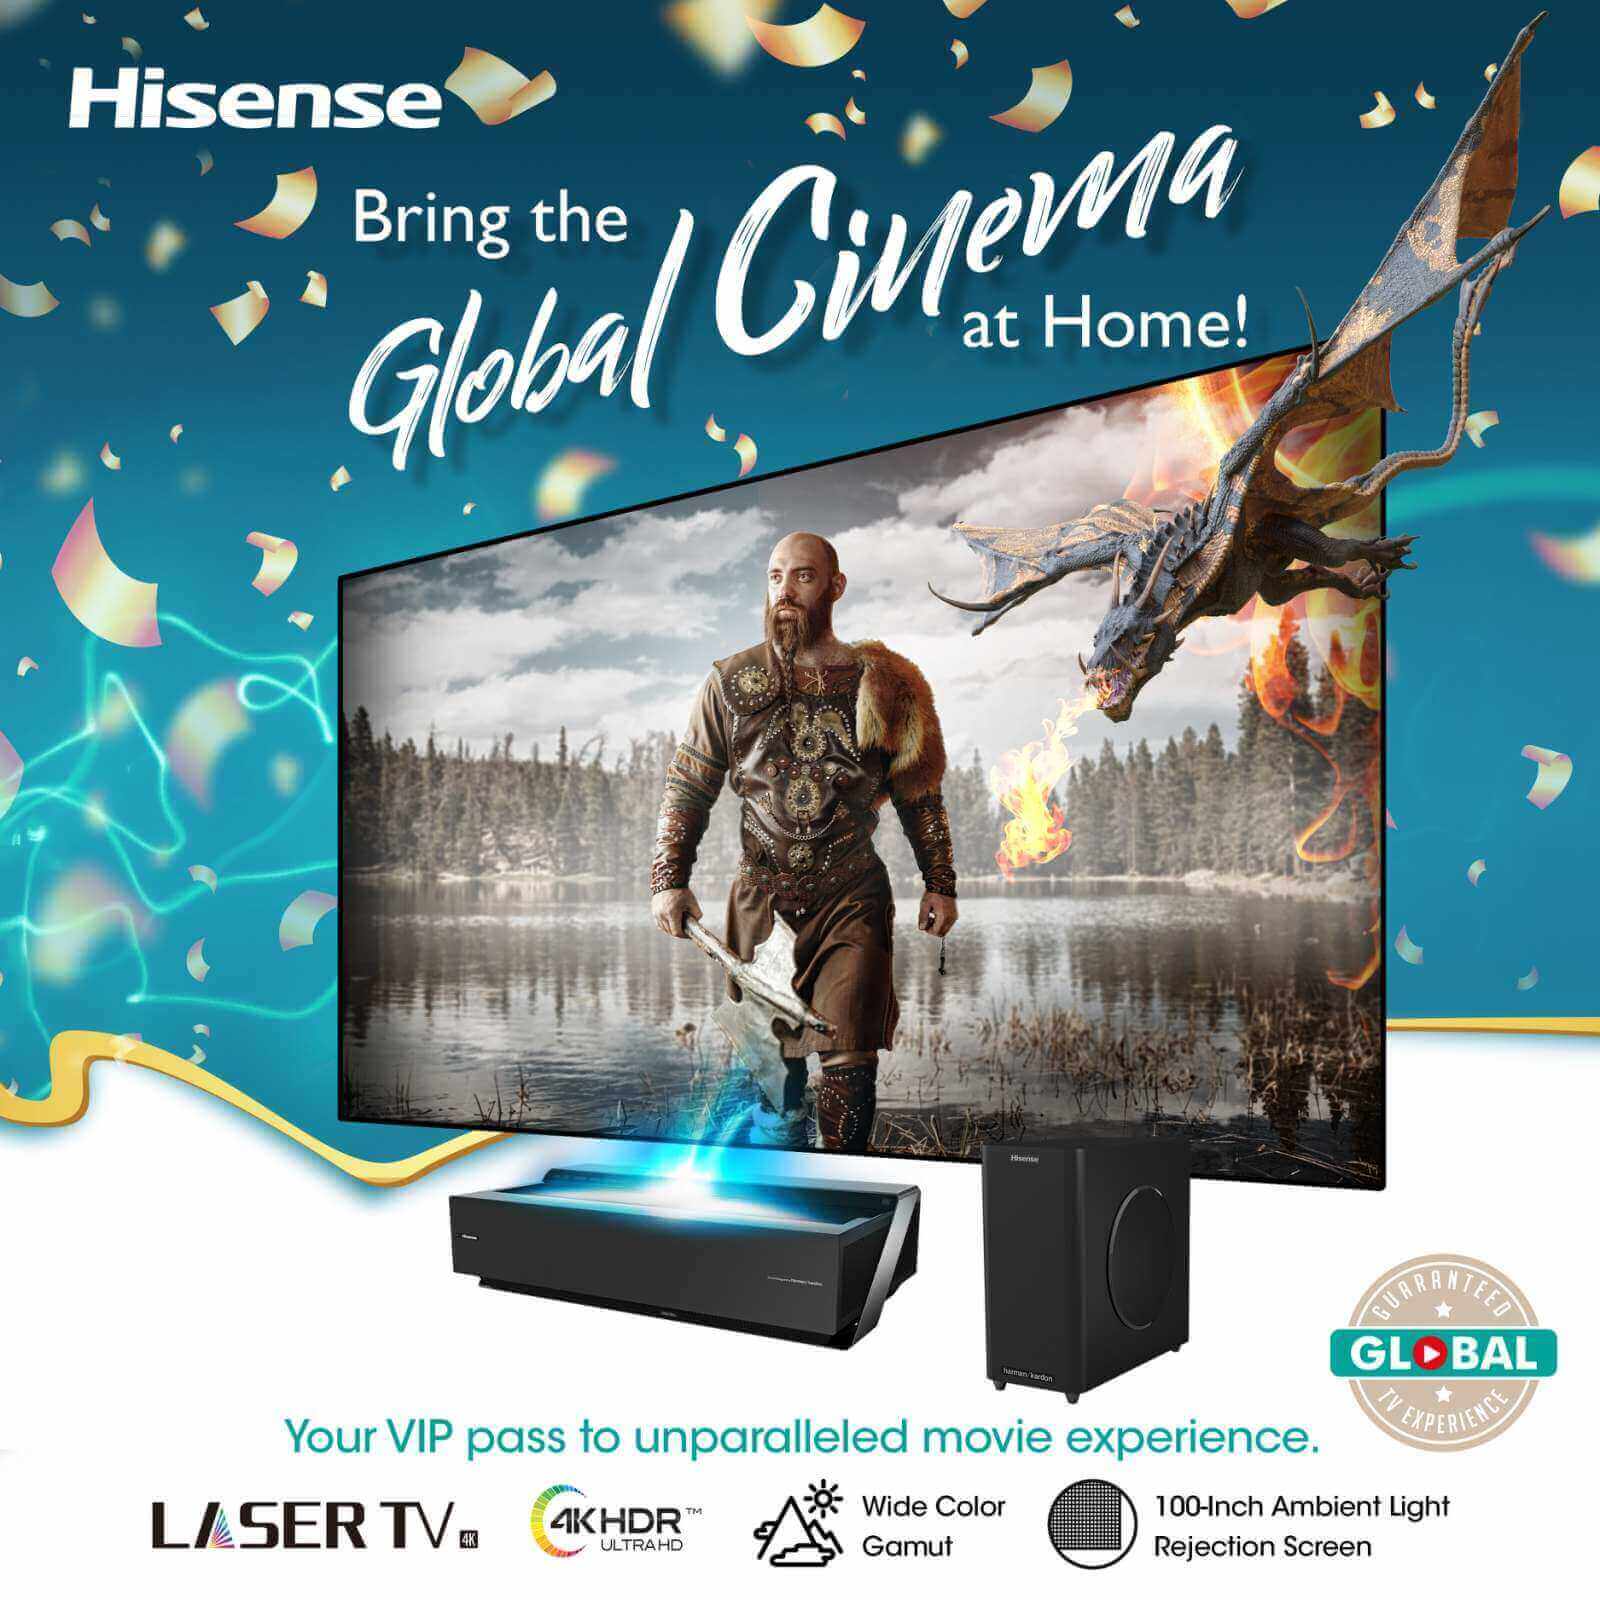 Hisense - Global Cinema